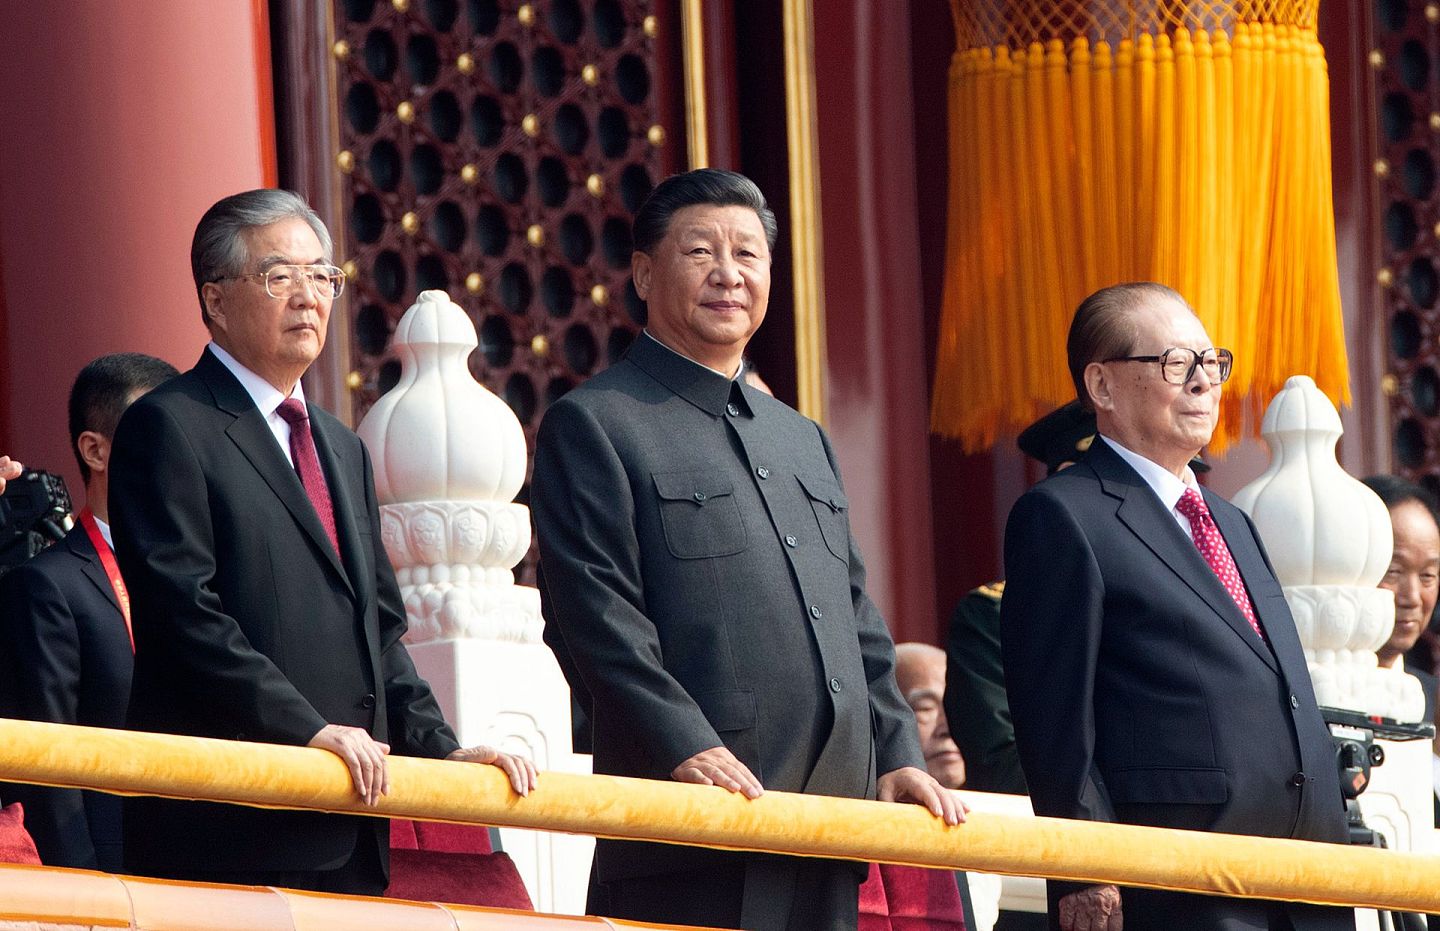 2019年10月1日，中共总书记习近平（中）、中共前总书记江泽民江泽民（右）、胡锦涛（左）出席了中共建政70周年阅兵式。（AP）